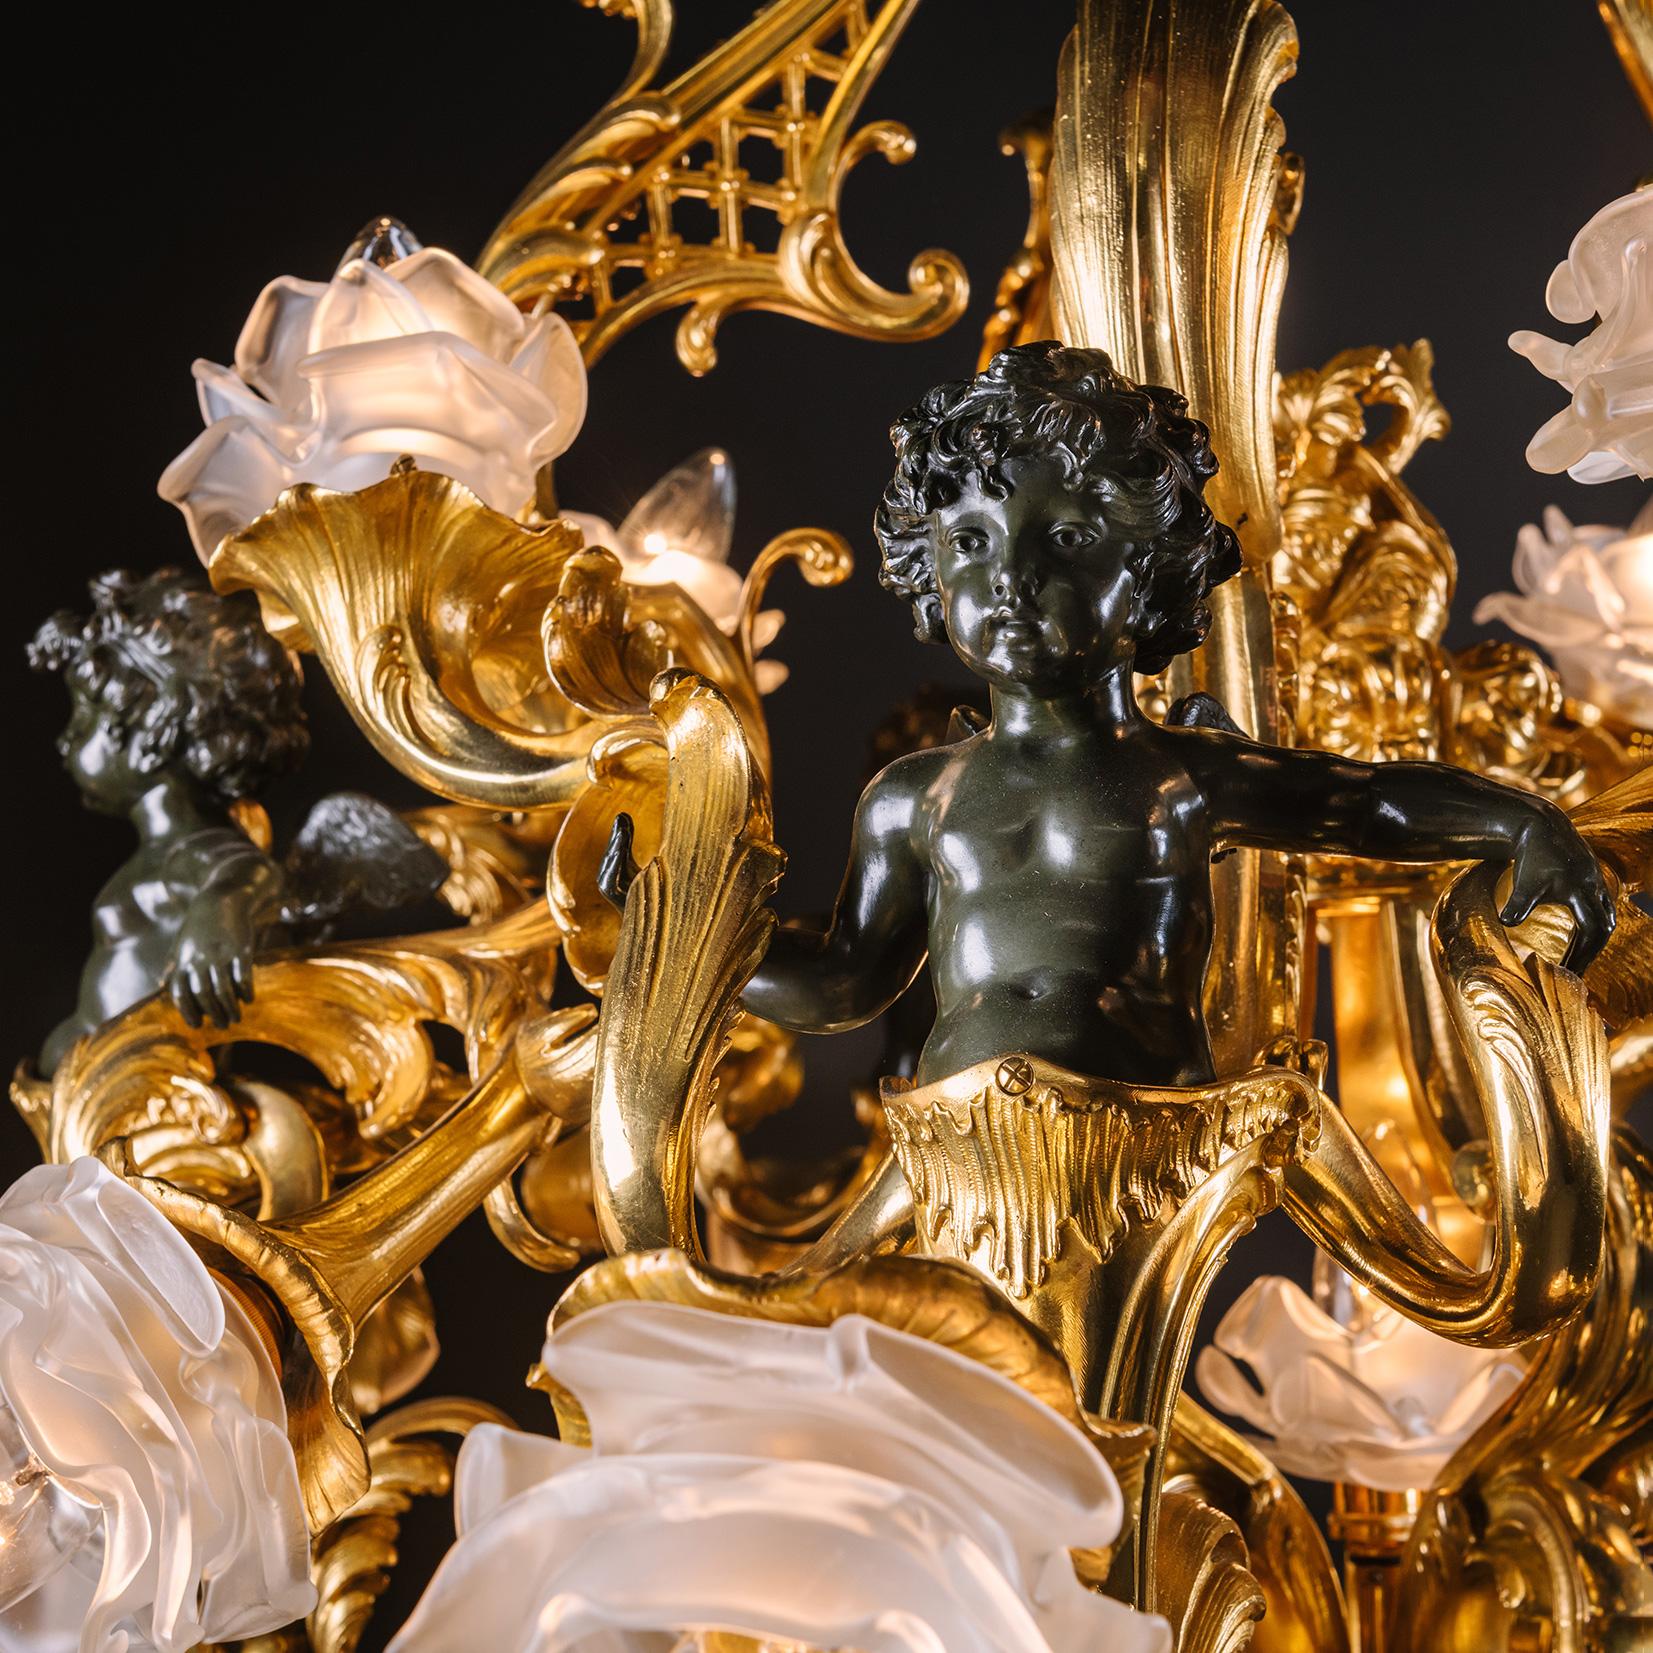 Un impressionnant lustre Belle Epoque en bronze patiné et doré à vingt-et-une lumières. Attribué à la Maison Millet, Paris. 

Ce lustre spectaculaire est doté d'un cadre sinueux en bronze doré. La couronne est ornée de feuilles d'acanthe et de